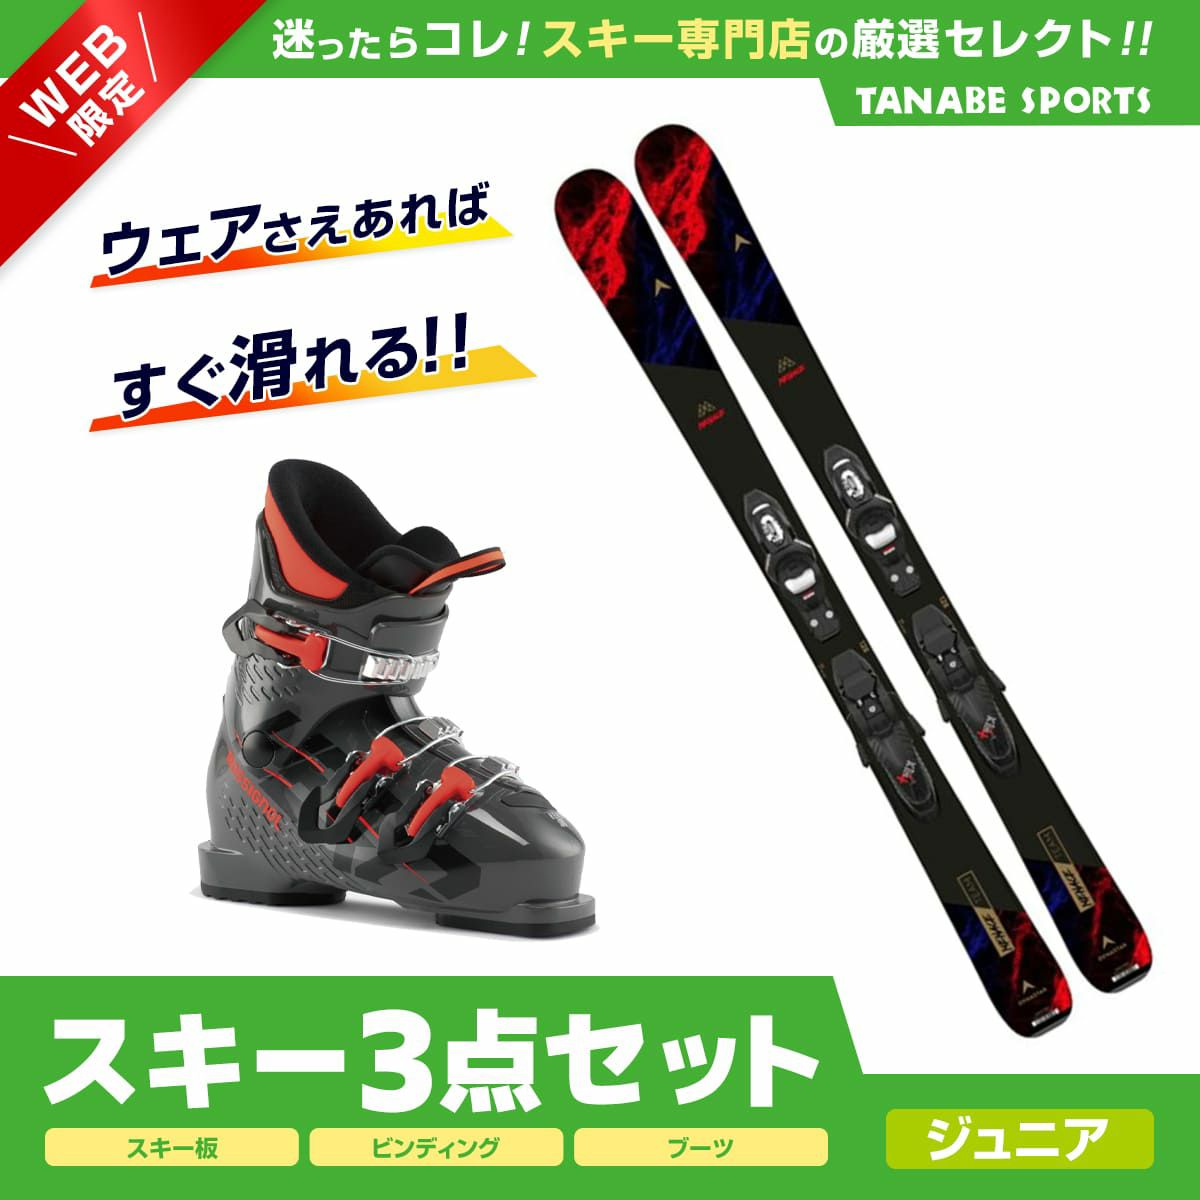 スキーセット atomic板110cm ブーツ21cm ストック85cm-